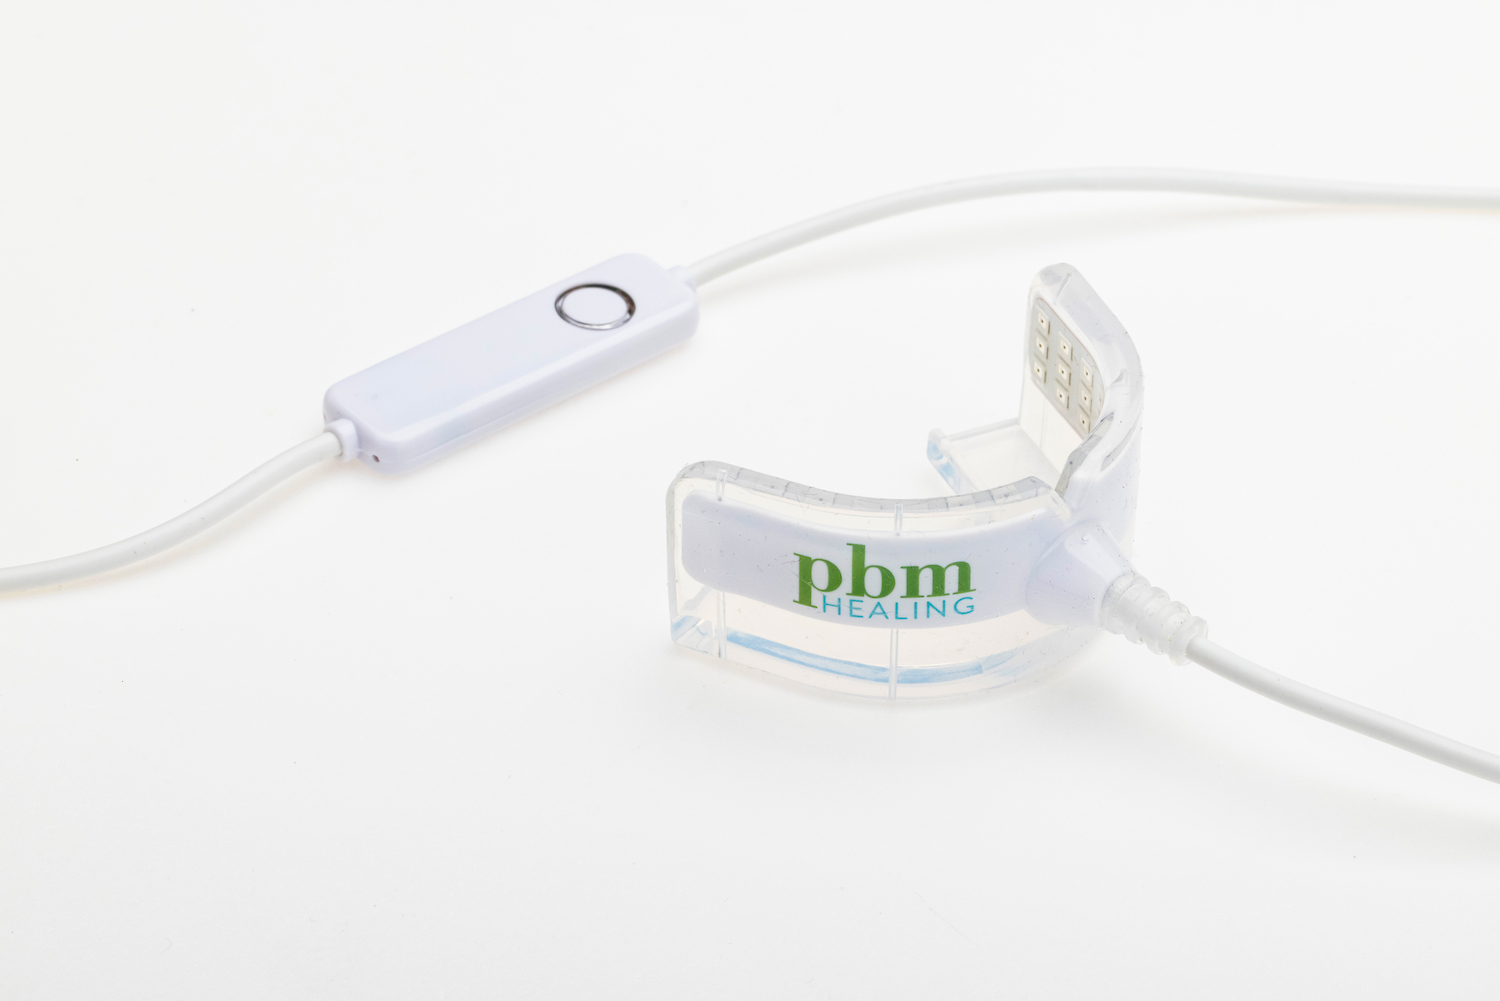 光加速装置 pbm healing 拡張型 マウスピース - 美容/健康